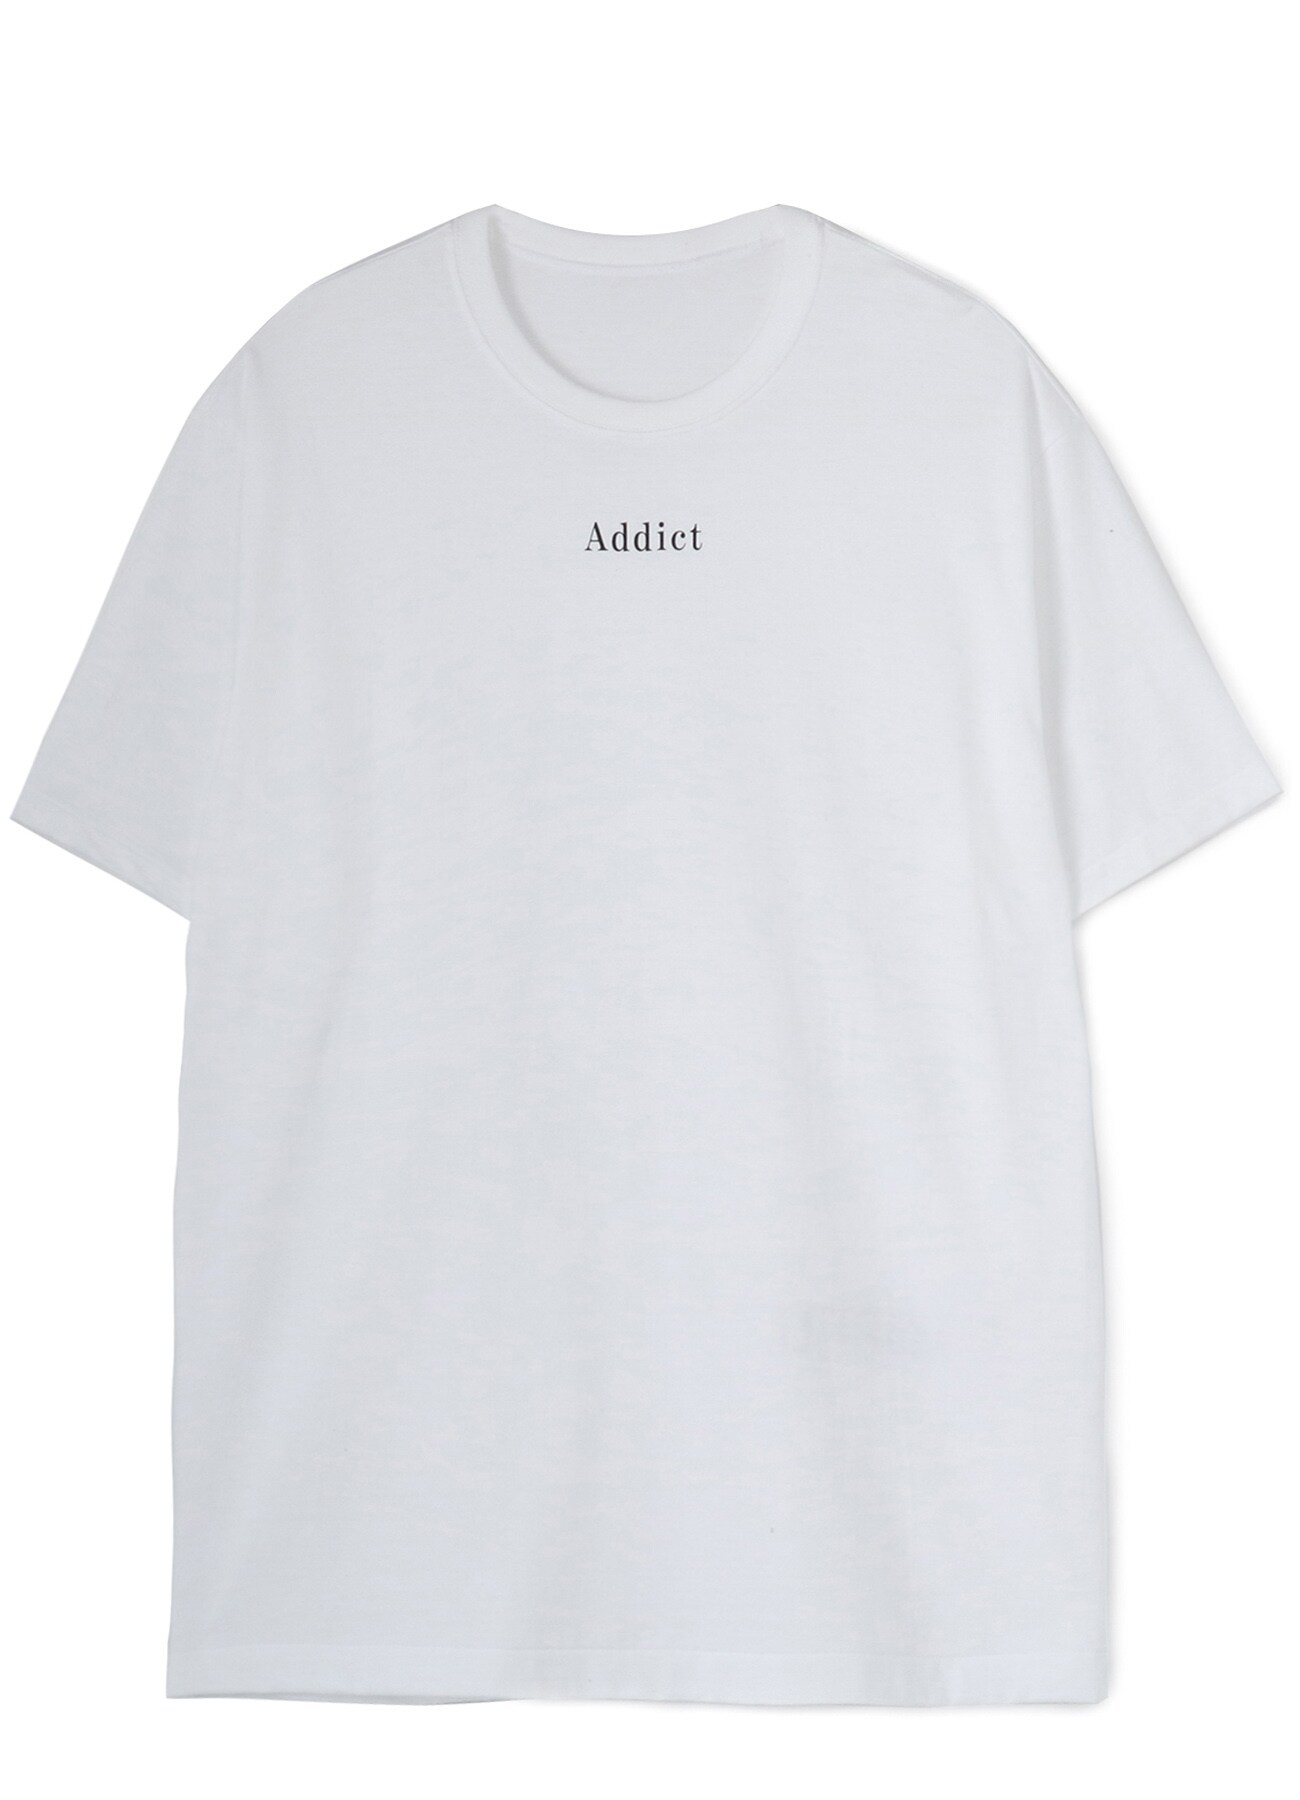 20/-Plain Stitch LIMI FEU Print T-Shirt C